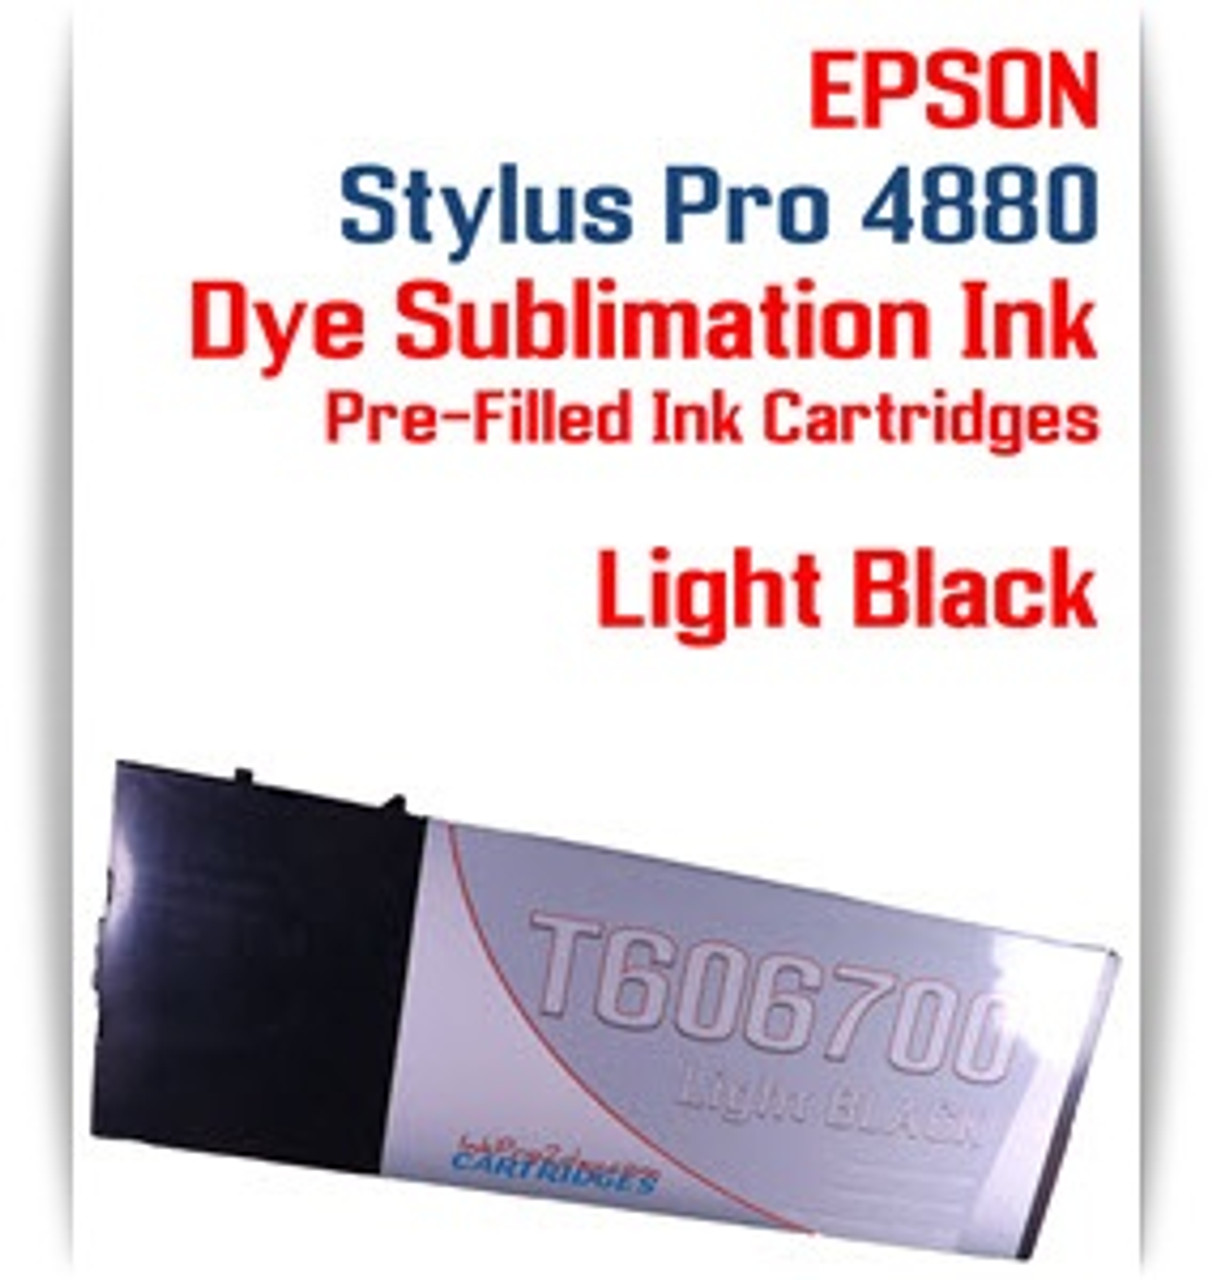 Light Black Epson Stylus Pro 4880 Dye Sublimation Ink Cartridge 220ml